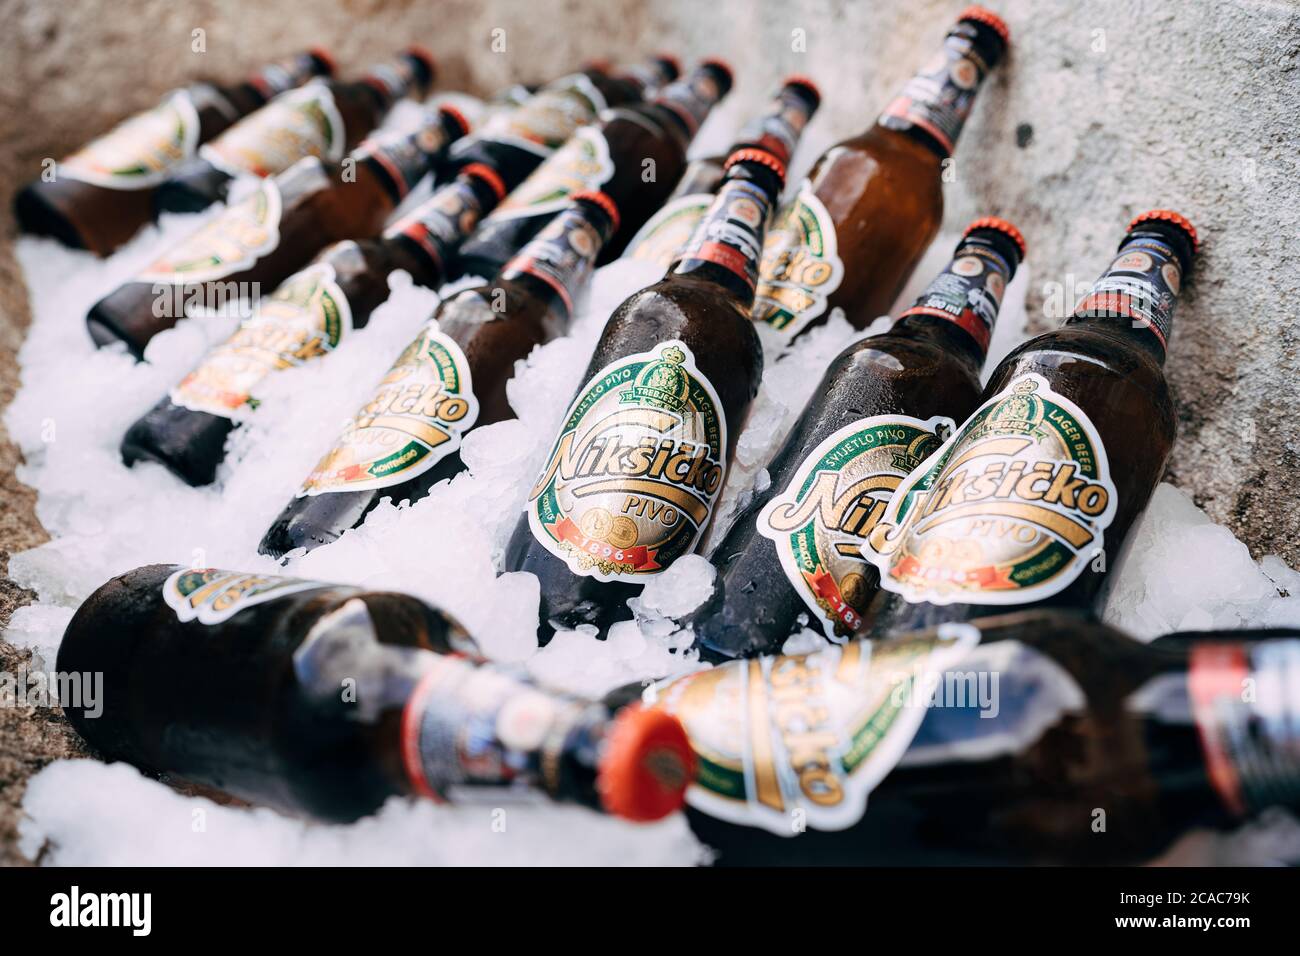 Gros plan des bouteilles de bière entièrement fermées sur la glace. La bière nationale au Monténégro est Nikcicicicico pivo. Banque D'Images